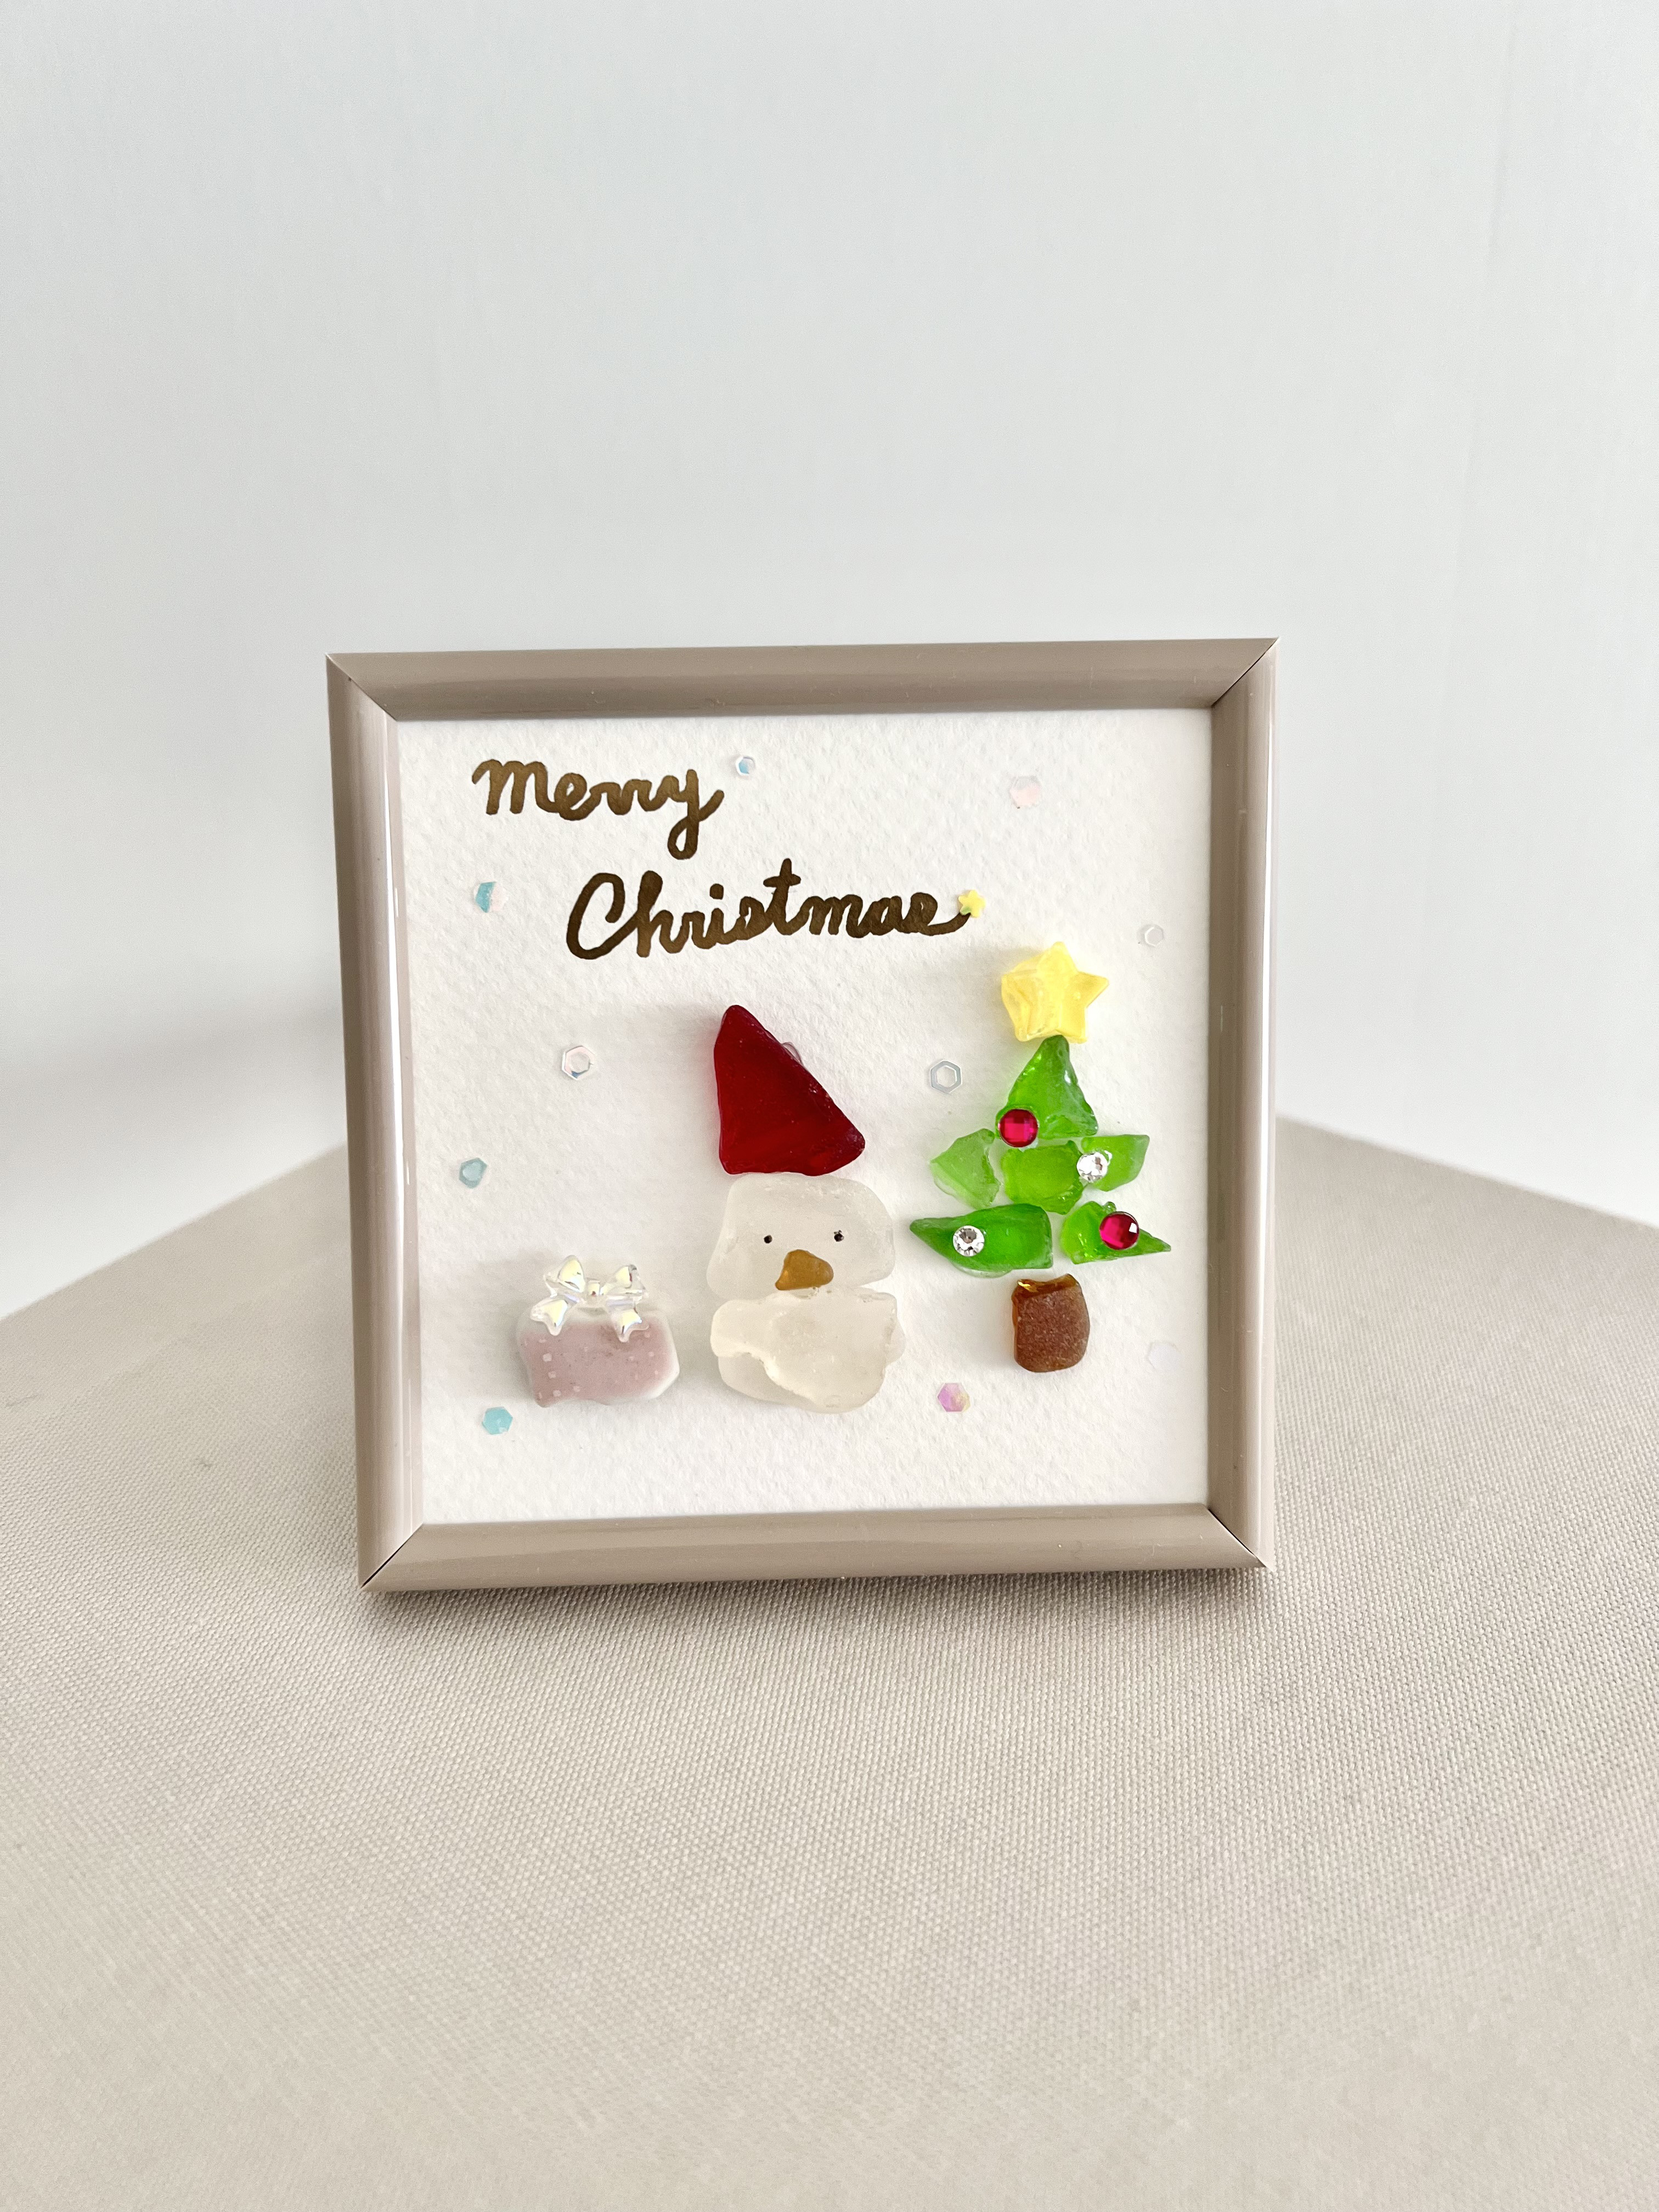 シーグラスアートNo369・小鳥サンタさんととクリスマスツリー-